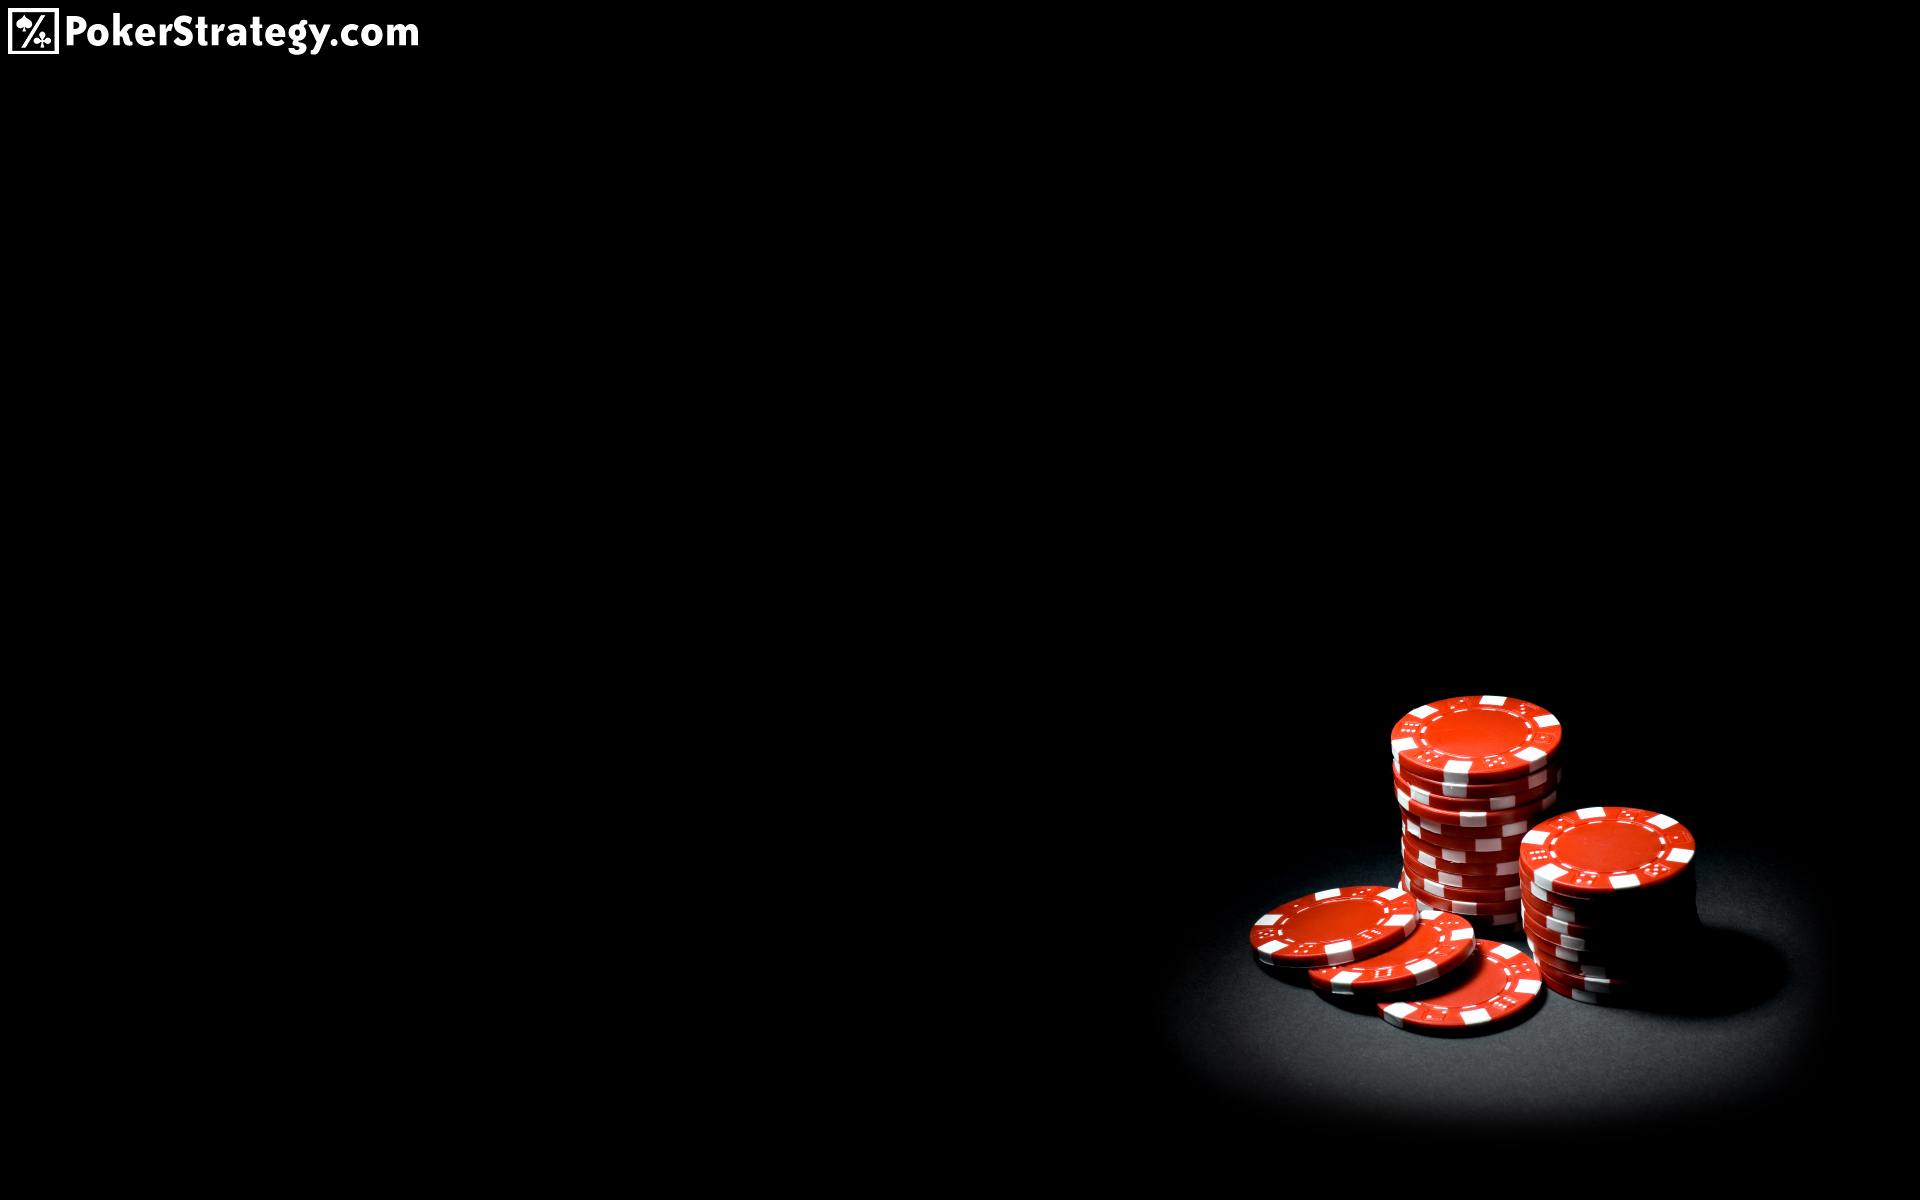 ganhar dinheiro jogando poker online gratis